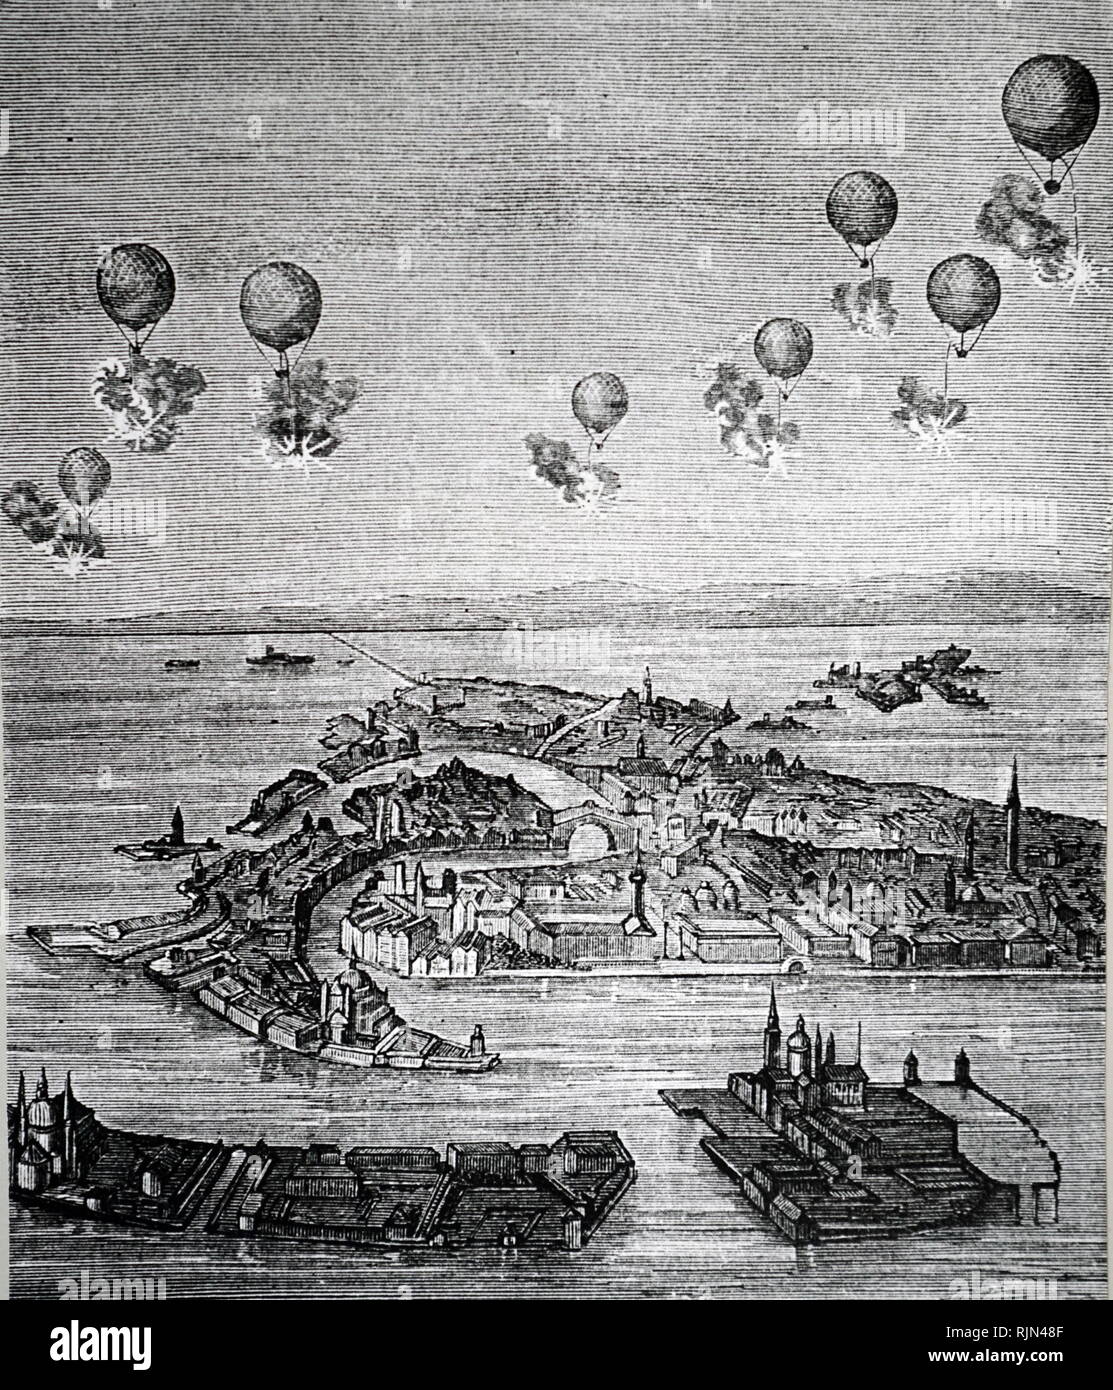 Abbildung: Österreichische Luftballons verwendet, Venedig 1849 Bombe  Stockfotografie - Alamy